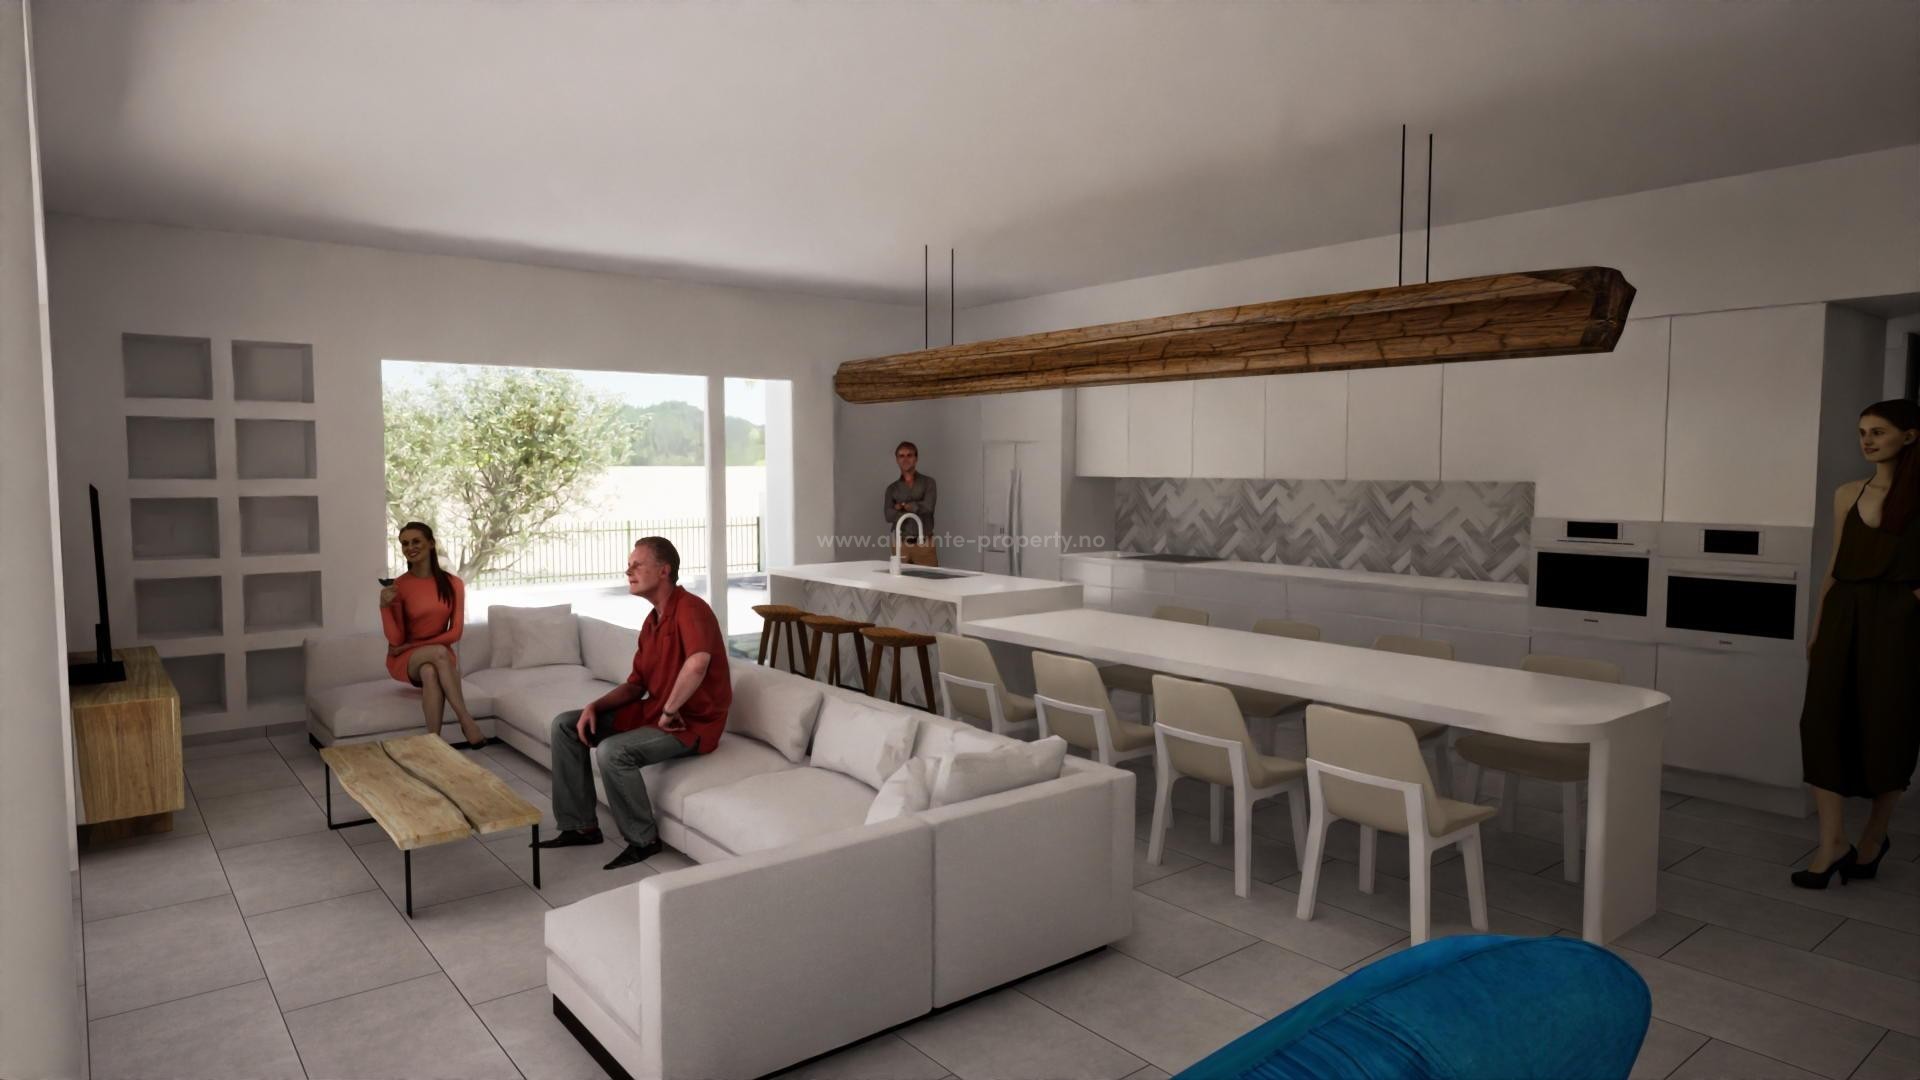 Alfaz del Pi med nye villaer/hus i Ibiza-stil, 3 soverom, 2 bad, stort utvendig bassengområde. Hovedsoverommet har walk-in closet og eget bad